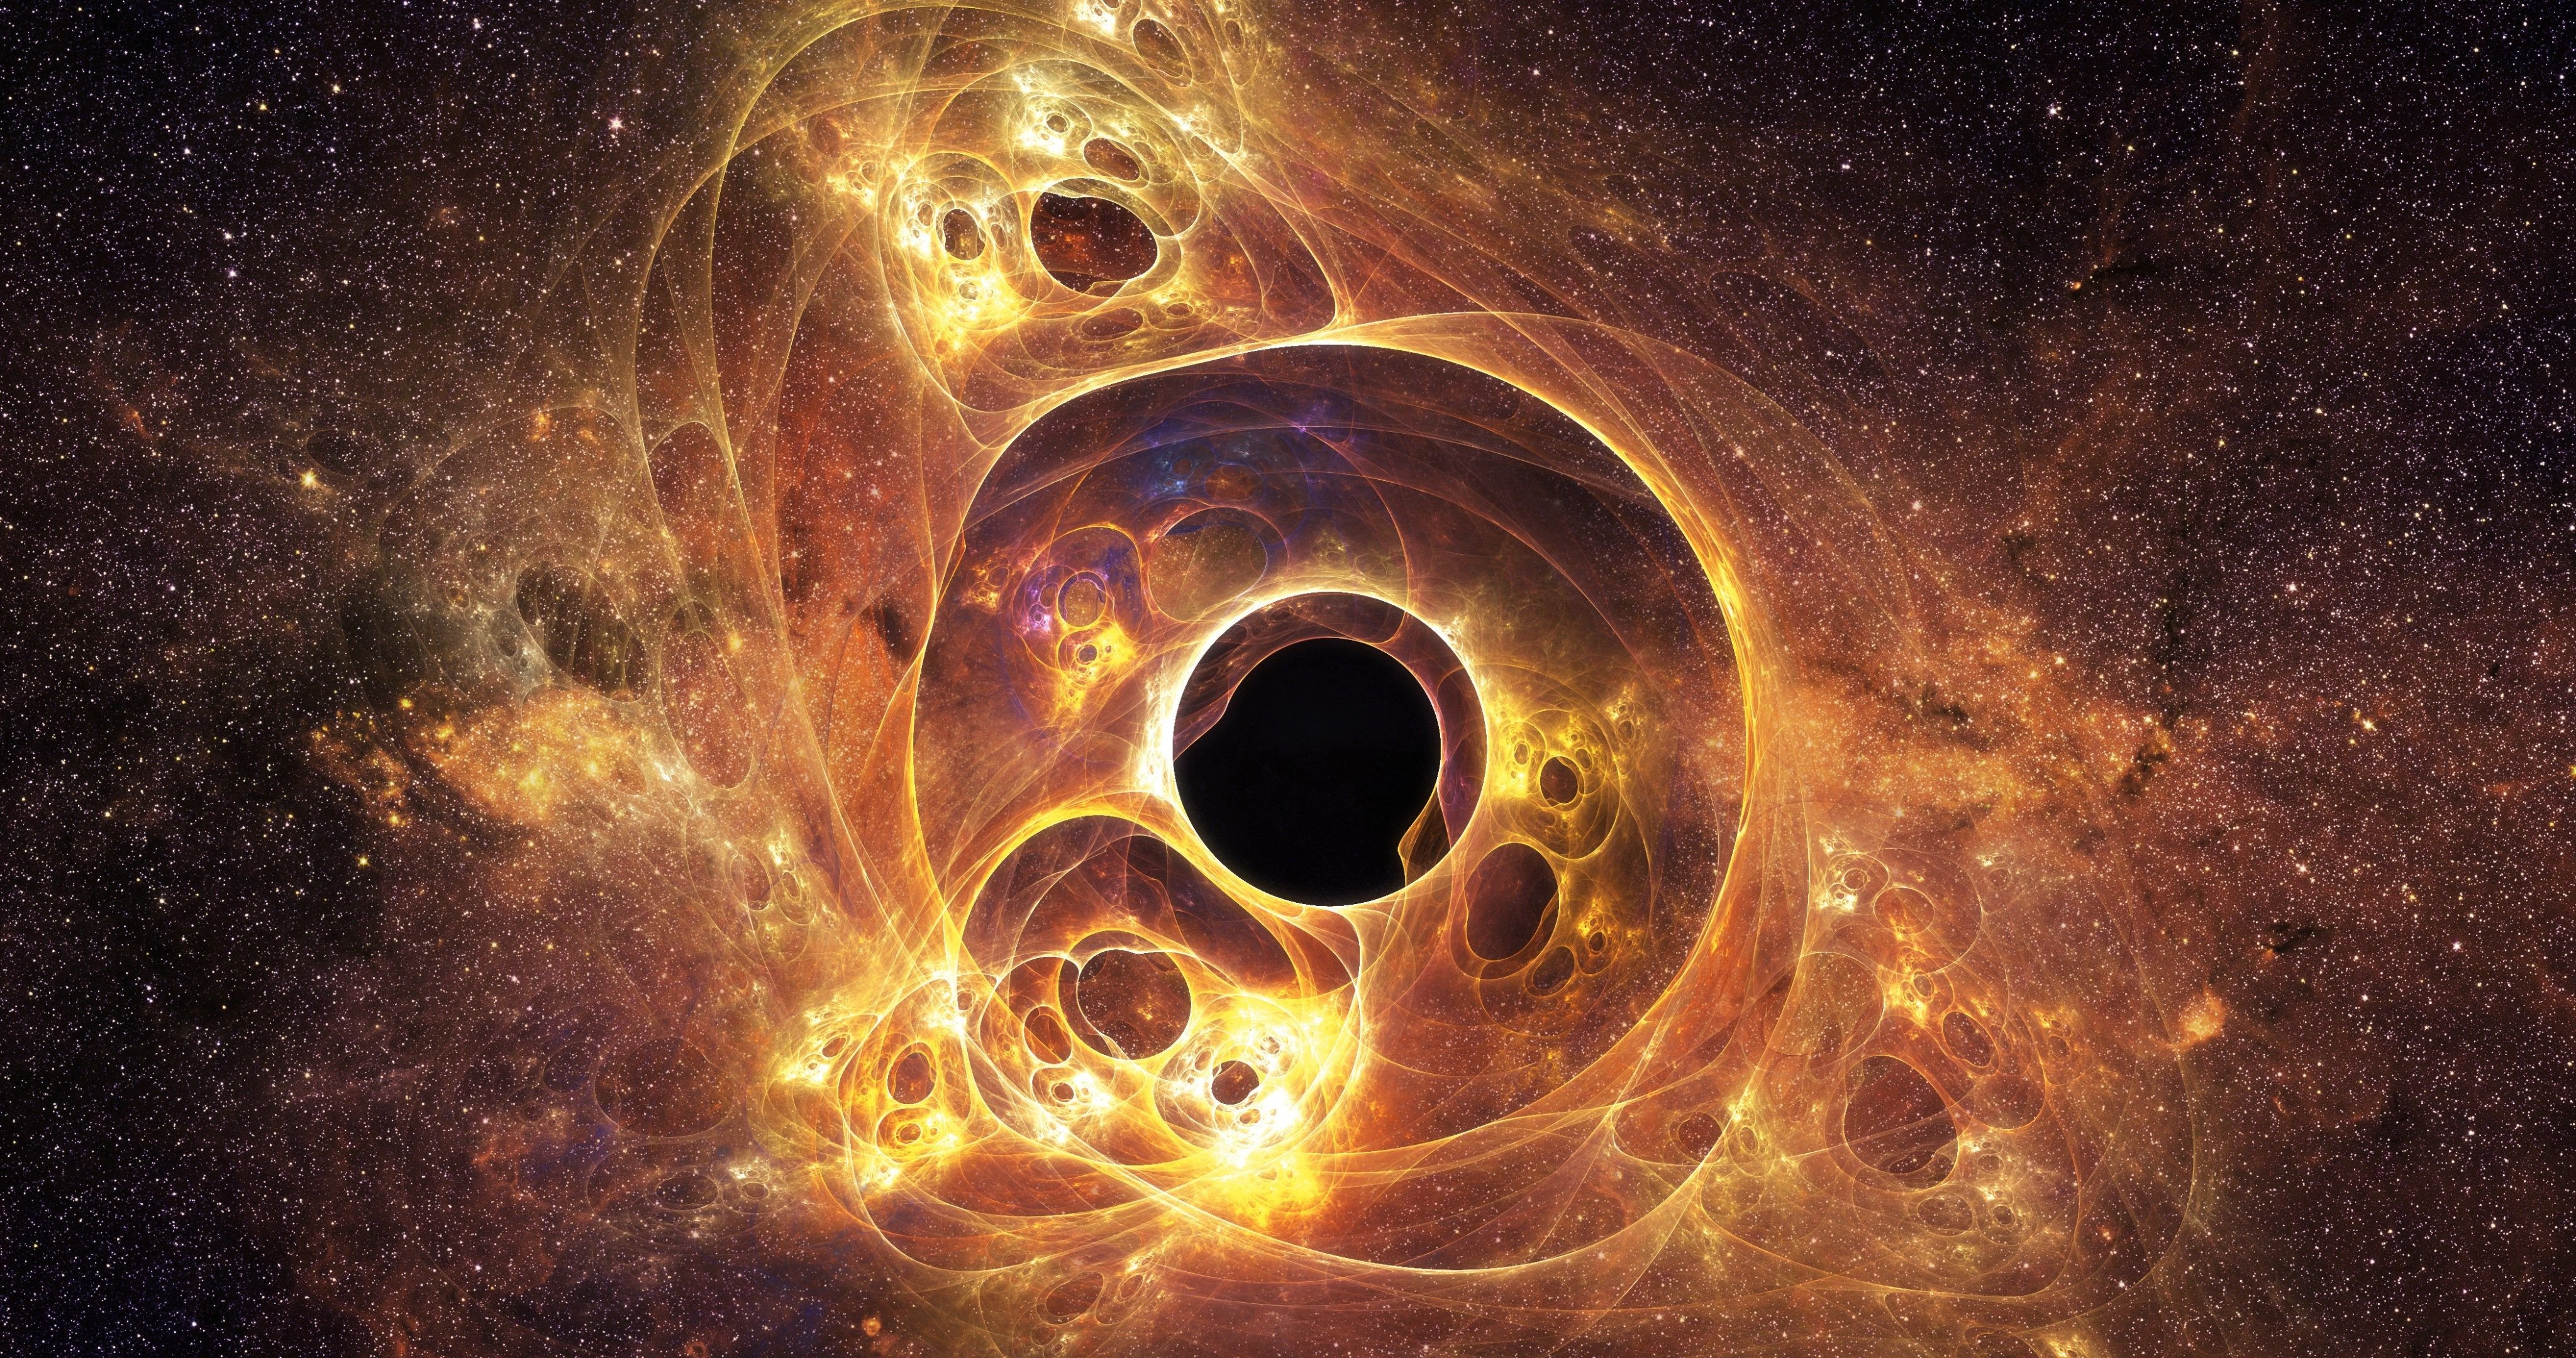 Lỗ đen (black hole): Tiêu điểm ngày hôm nay chính là những hình ảnh rực rỡ về lỗ đen có khả năng \